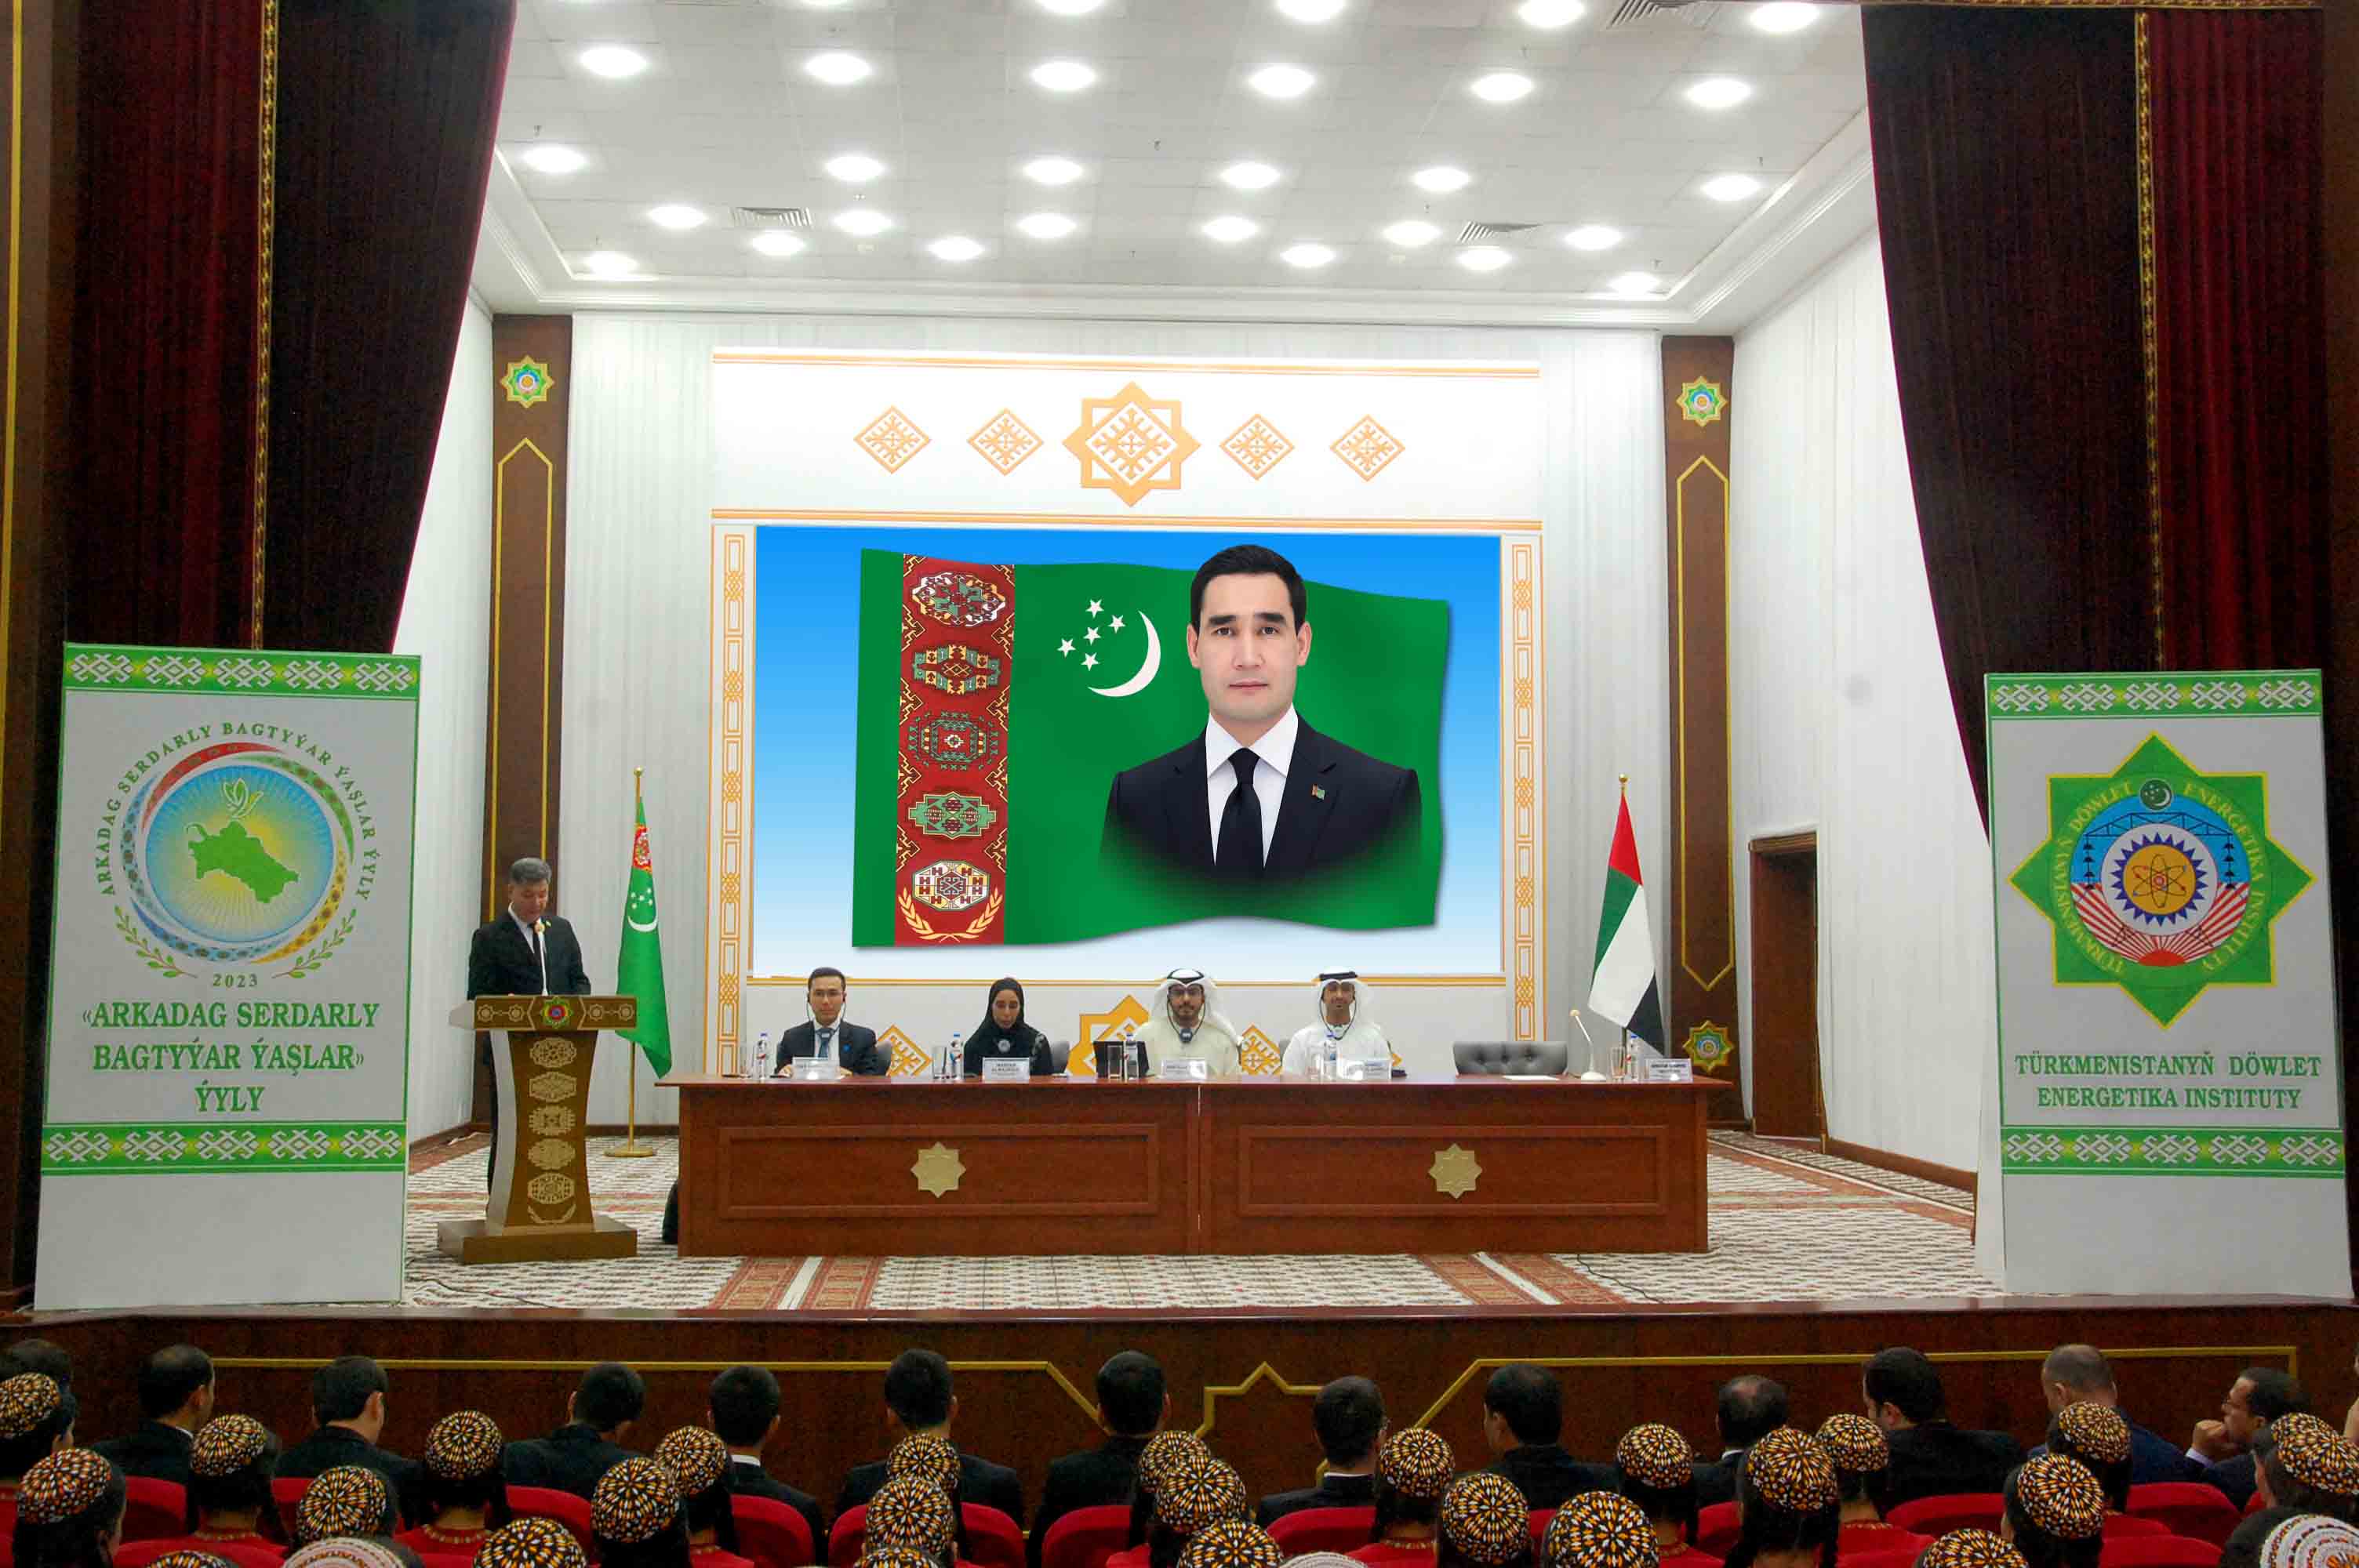 BAE-niň wekilleri Türkmenistanyň Döwlet energetika institutyna  baryp gördüler